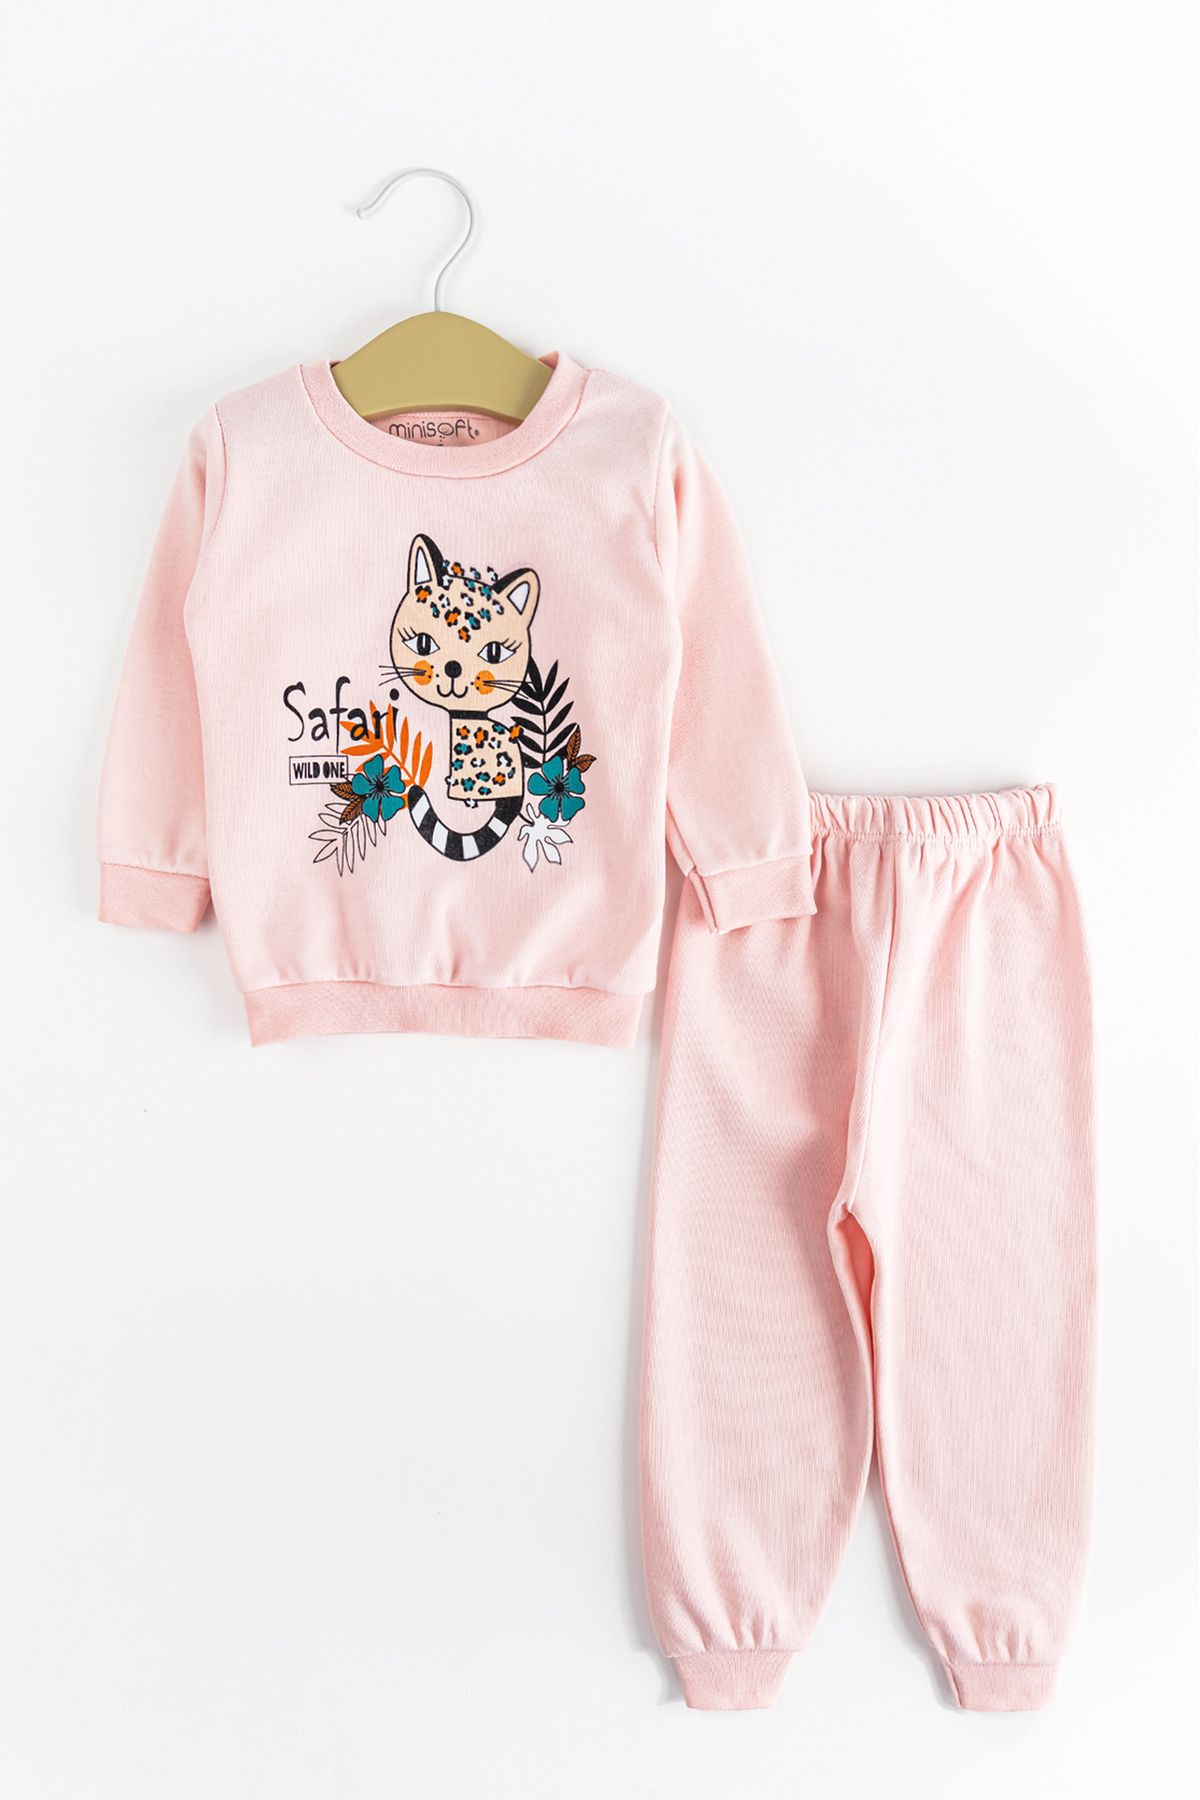 Babymod Figürlü Kız/erkek Bebek Pijama Takımı